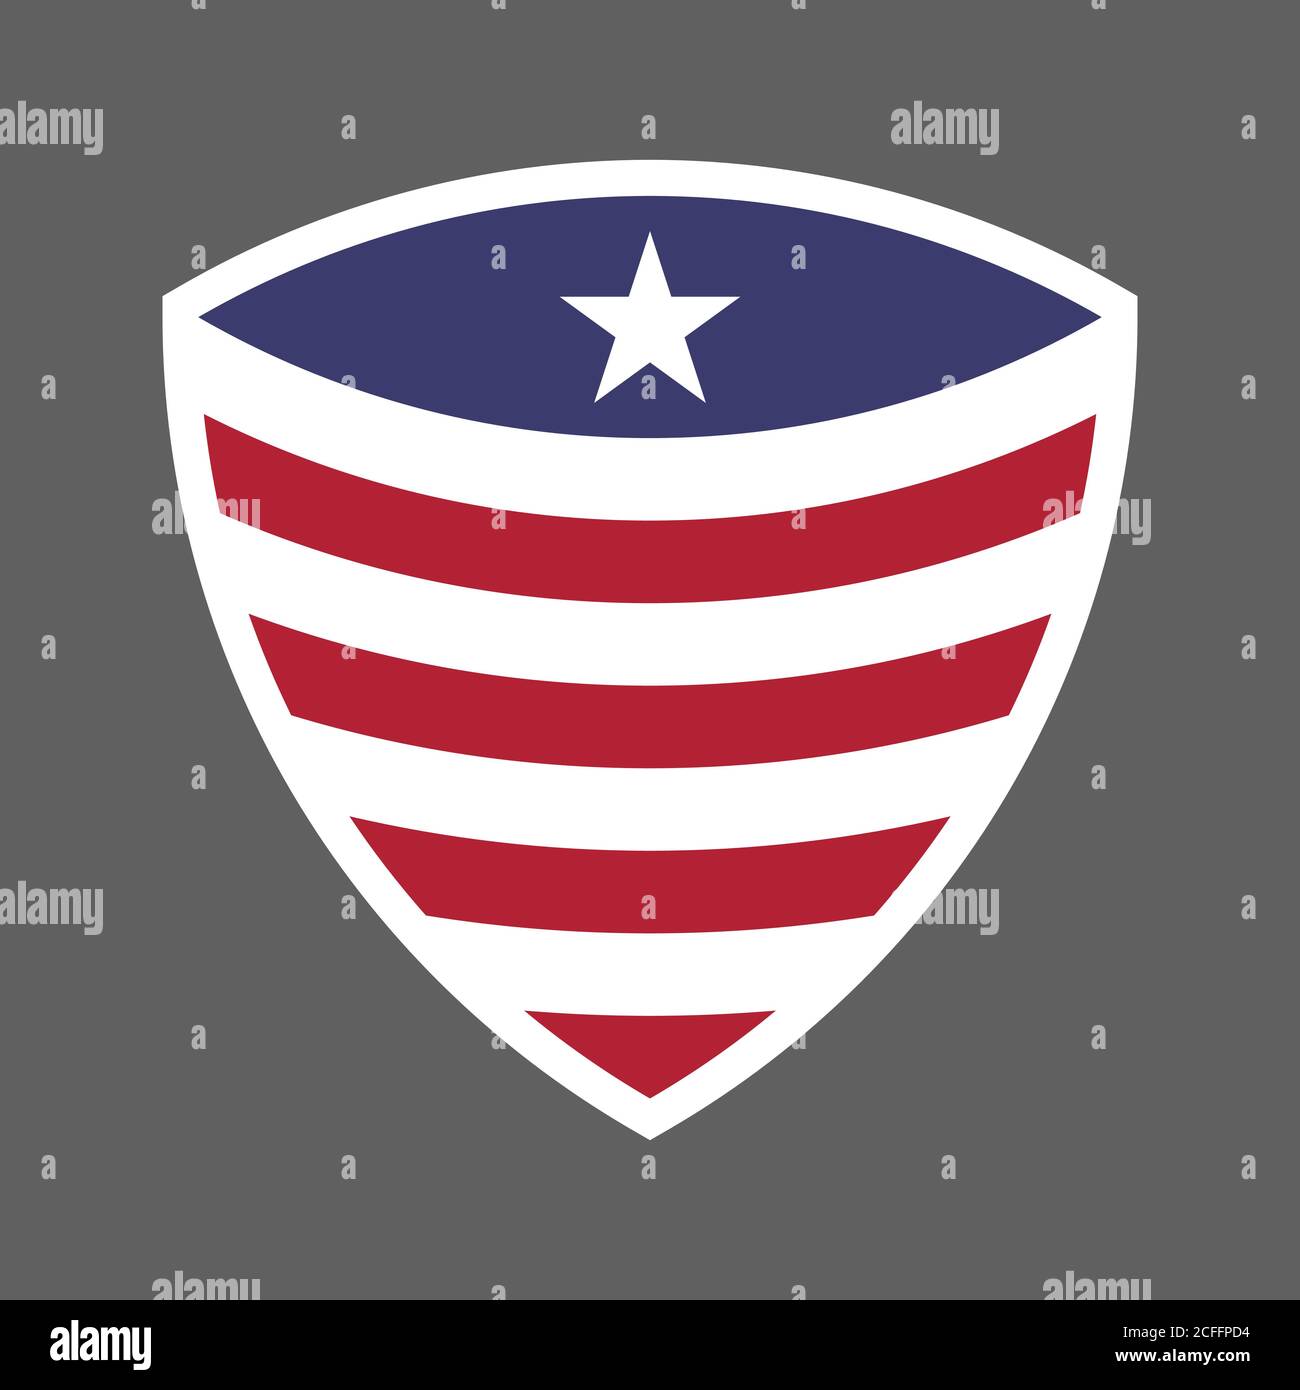 Etats-Unis d'Amérique Etats-Unis drapeau Shield icône logo illustration vectorielle. Jour de l'indépendance. 4 juillet. Élection présidentielle Illustration de Vecteur